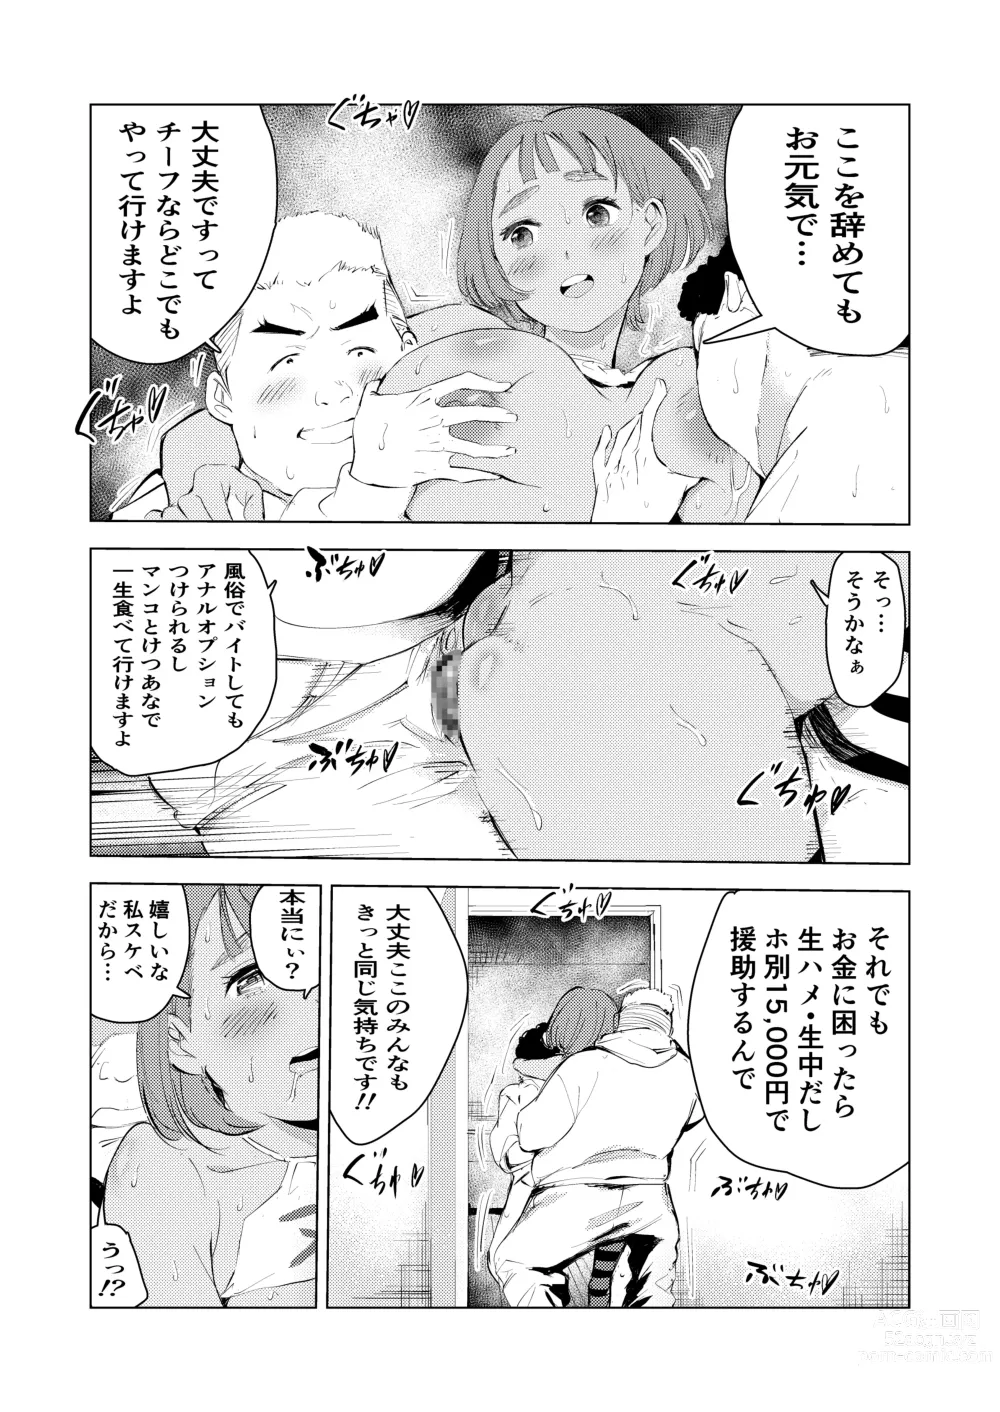 Page 59 of doujinshi Ashisutanto no oshigoto